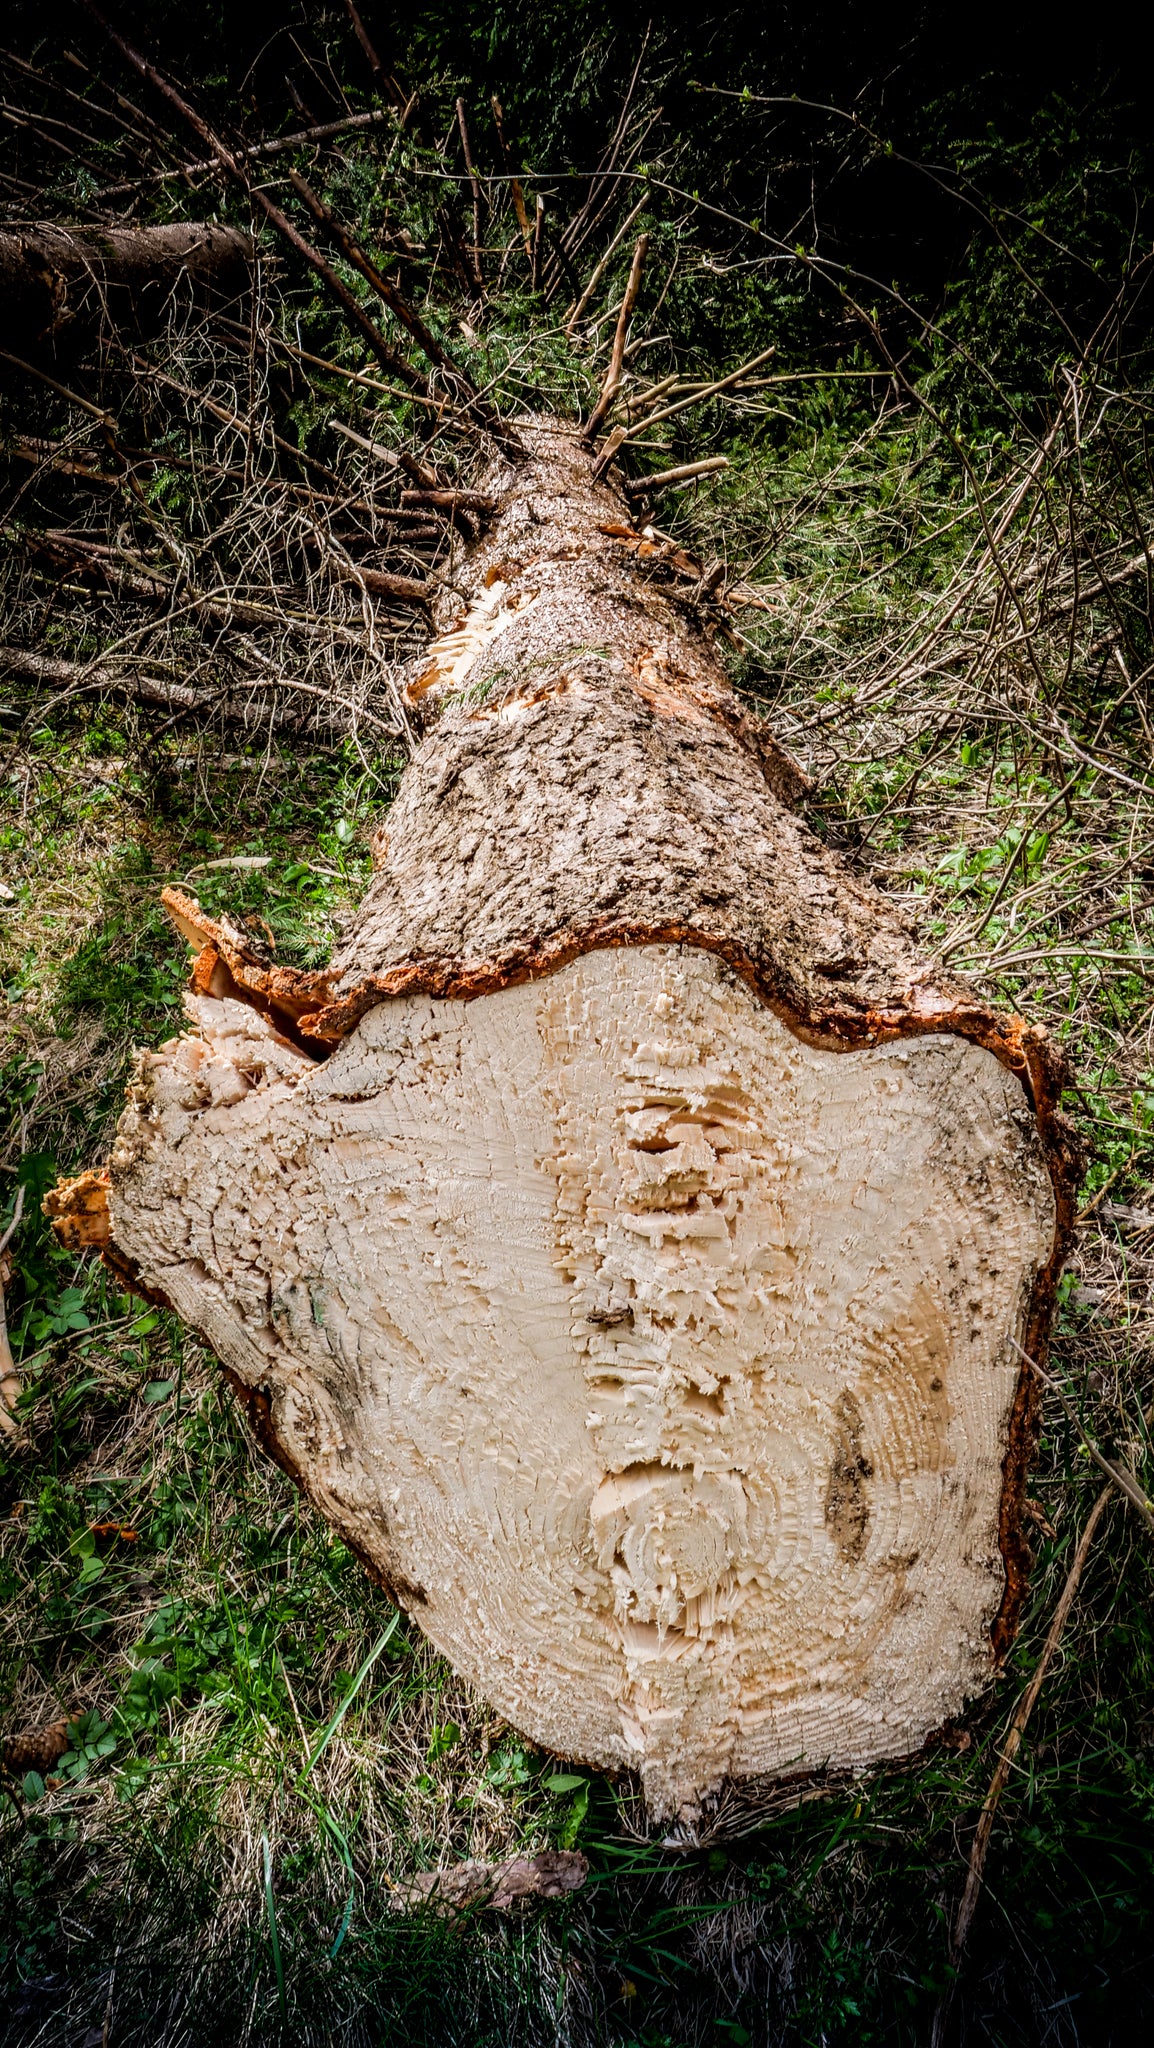 TreviBenne Wood Raptor Tree Shears - 400-550mm - 12-30T excavators